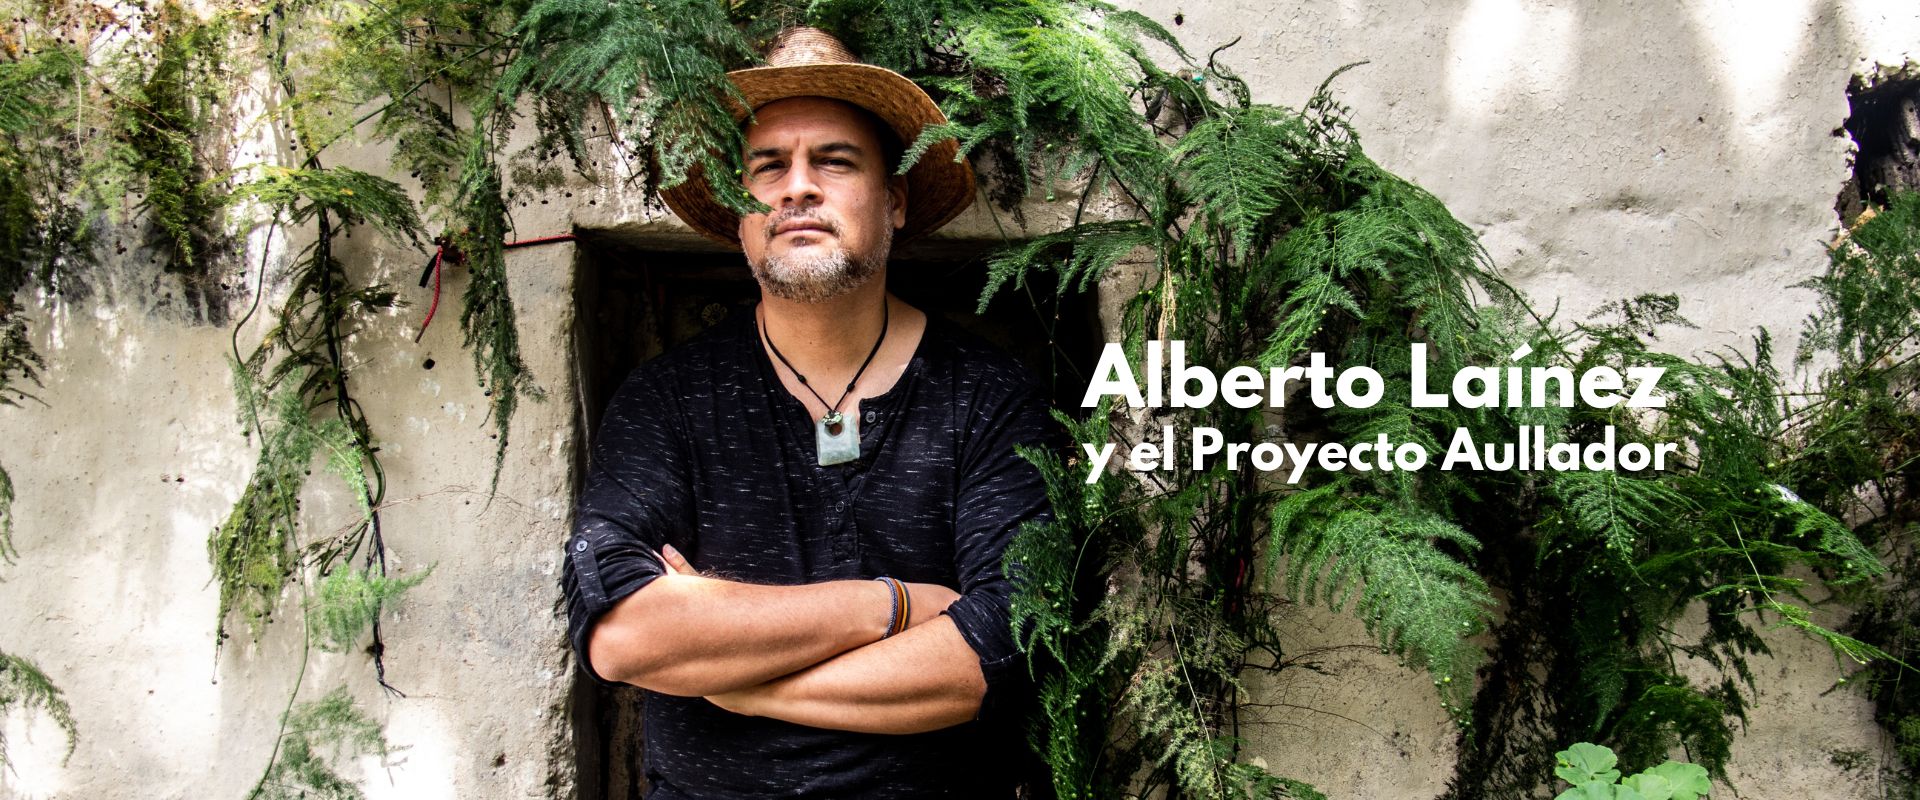 Alberto Laínez y el Proyecto Aullador